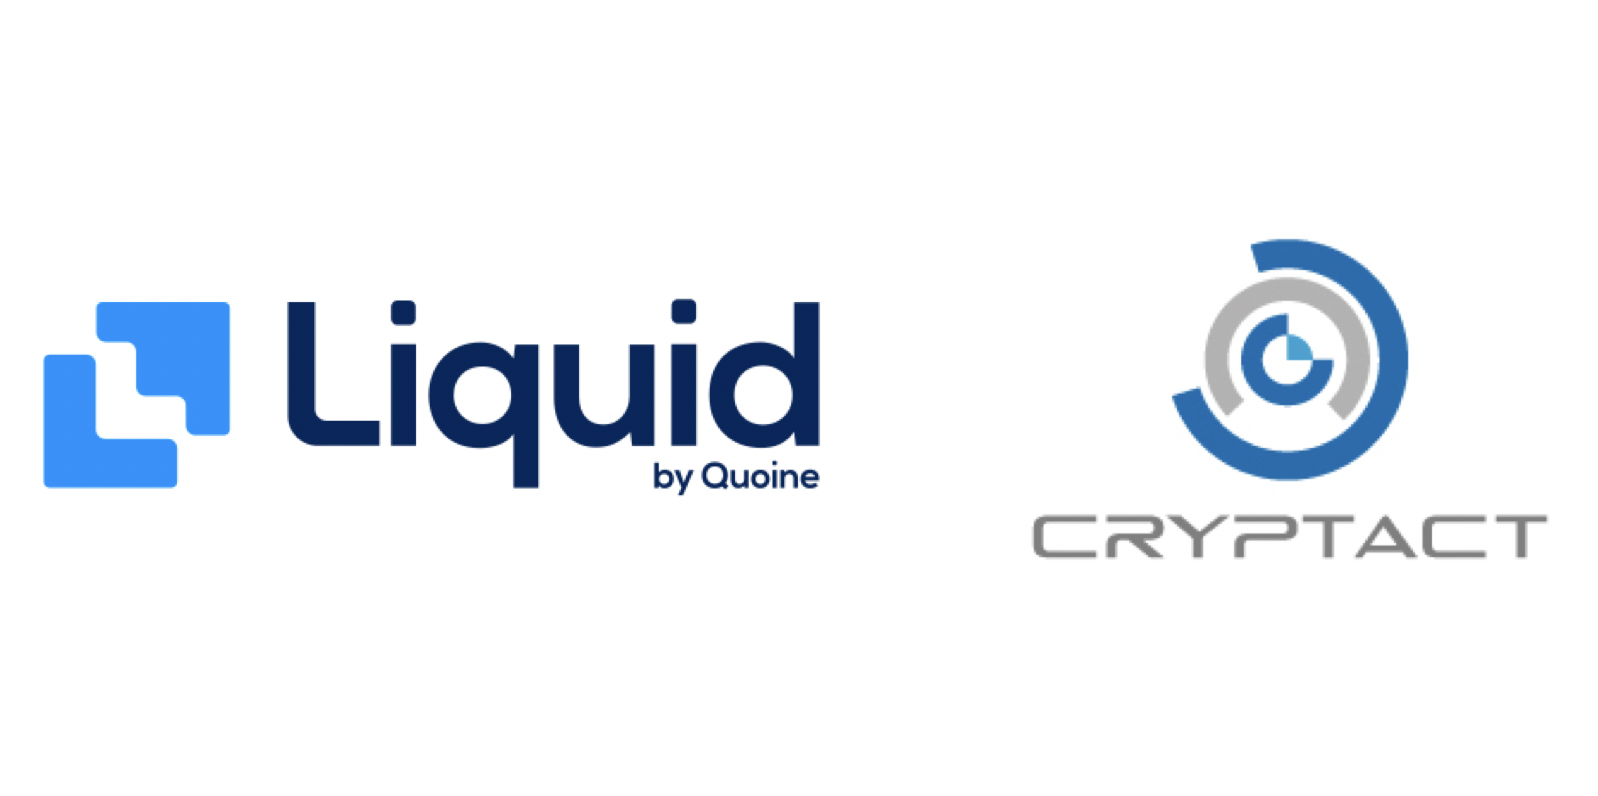 QUOINE、クリプタクトと業務提携を発表